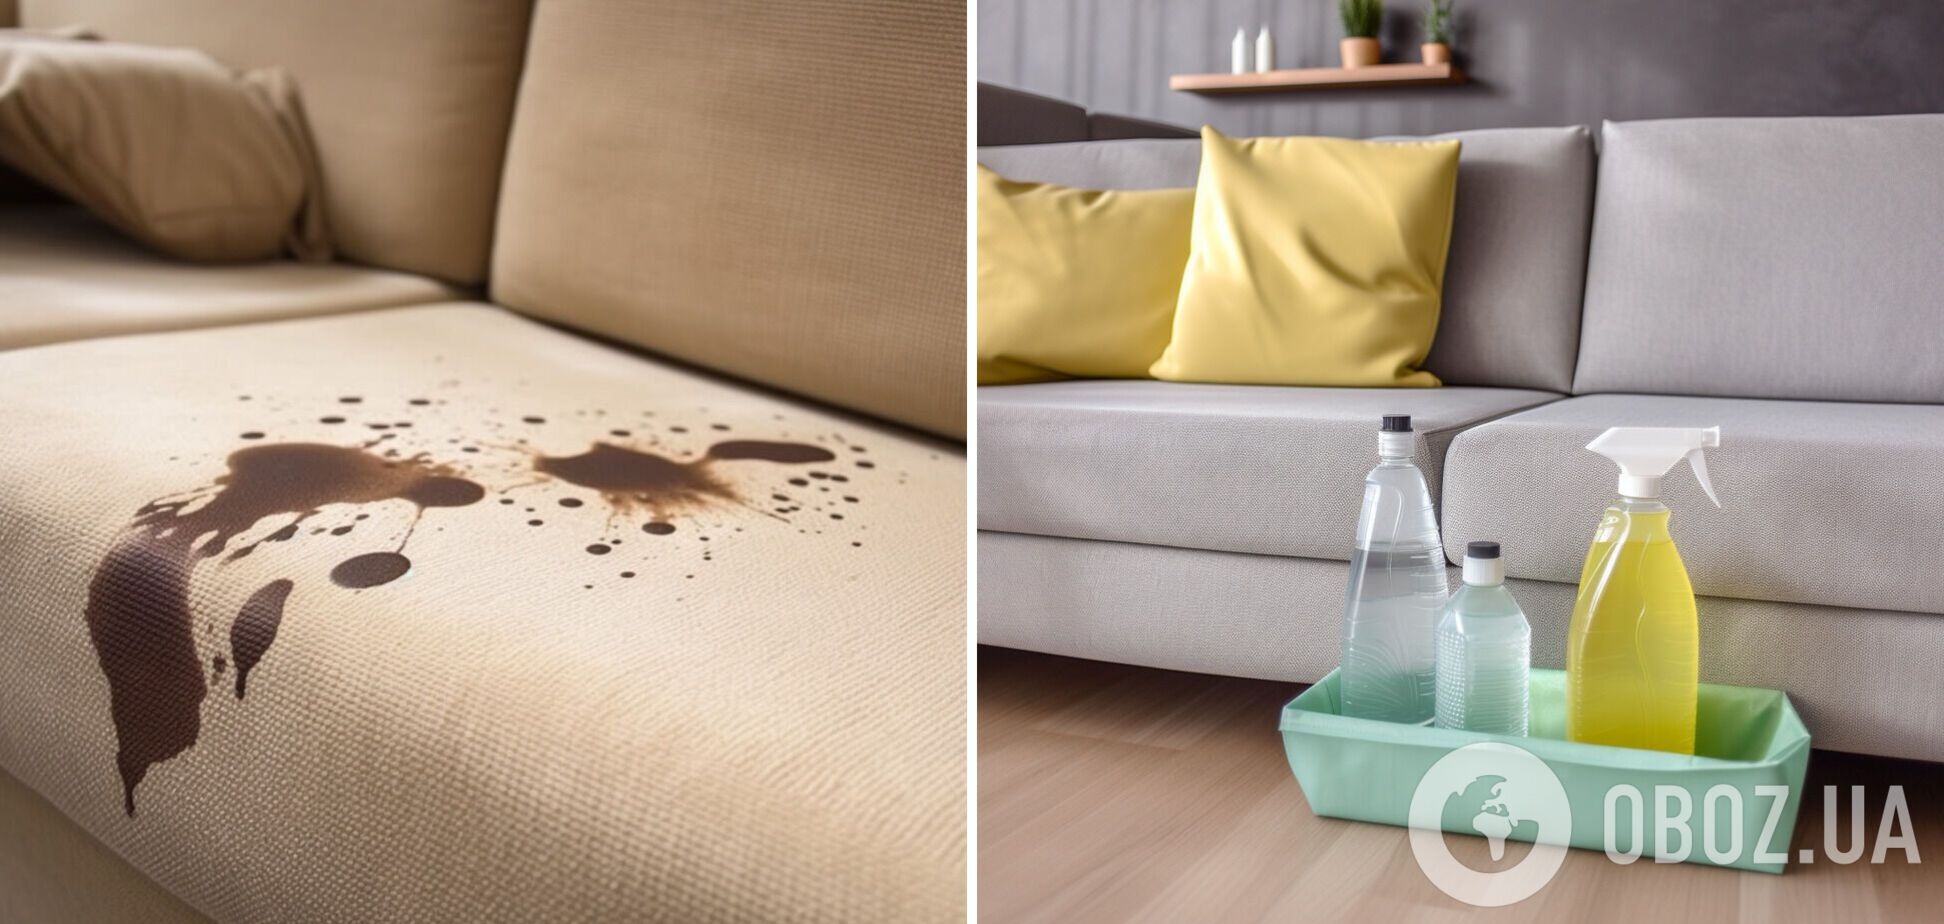 Мебель будет как новая: чем отчистить пятна на диванах